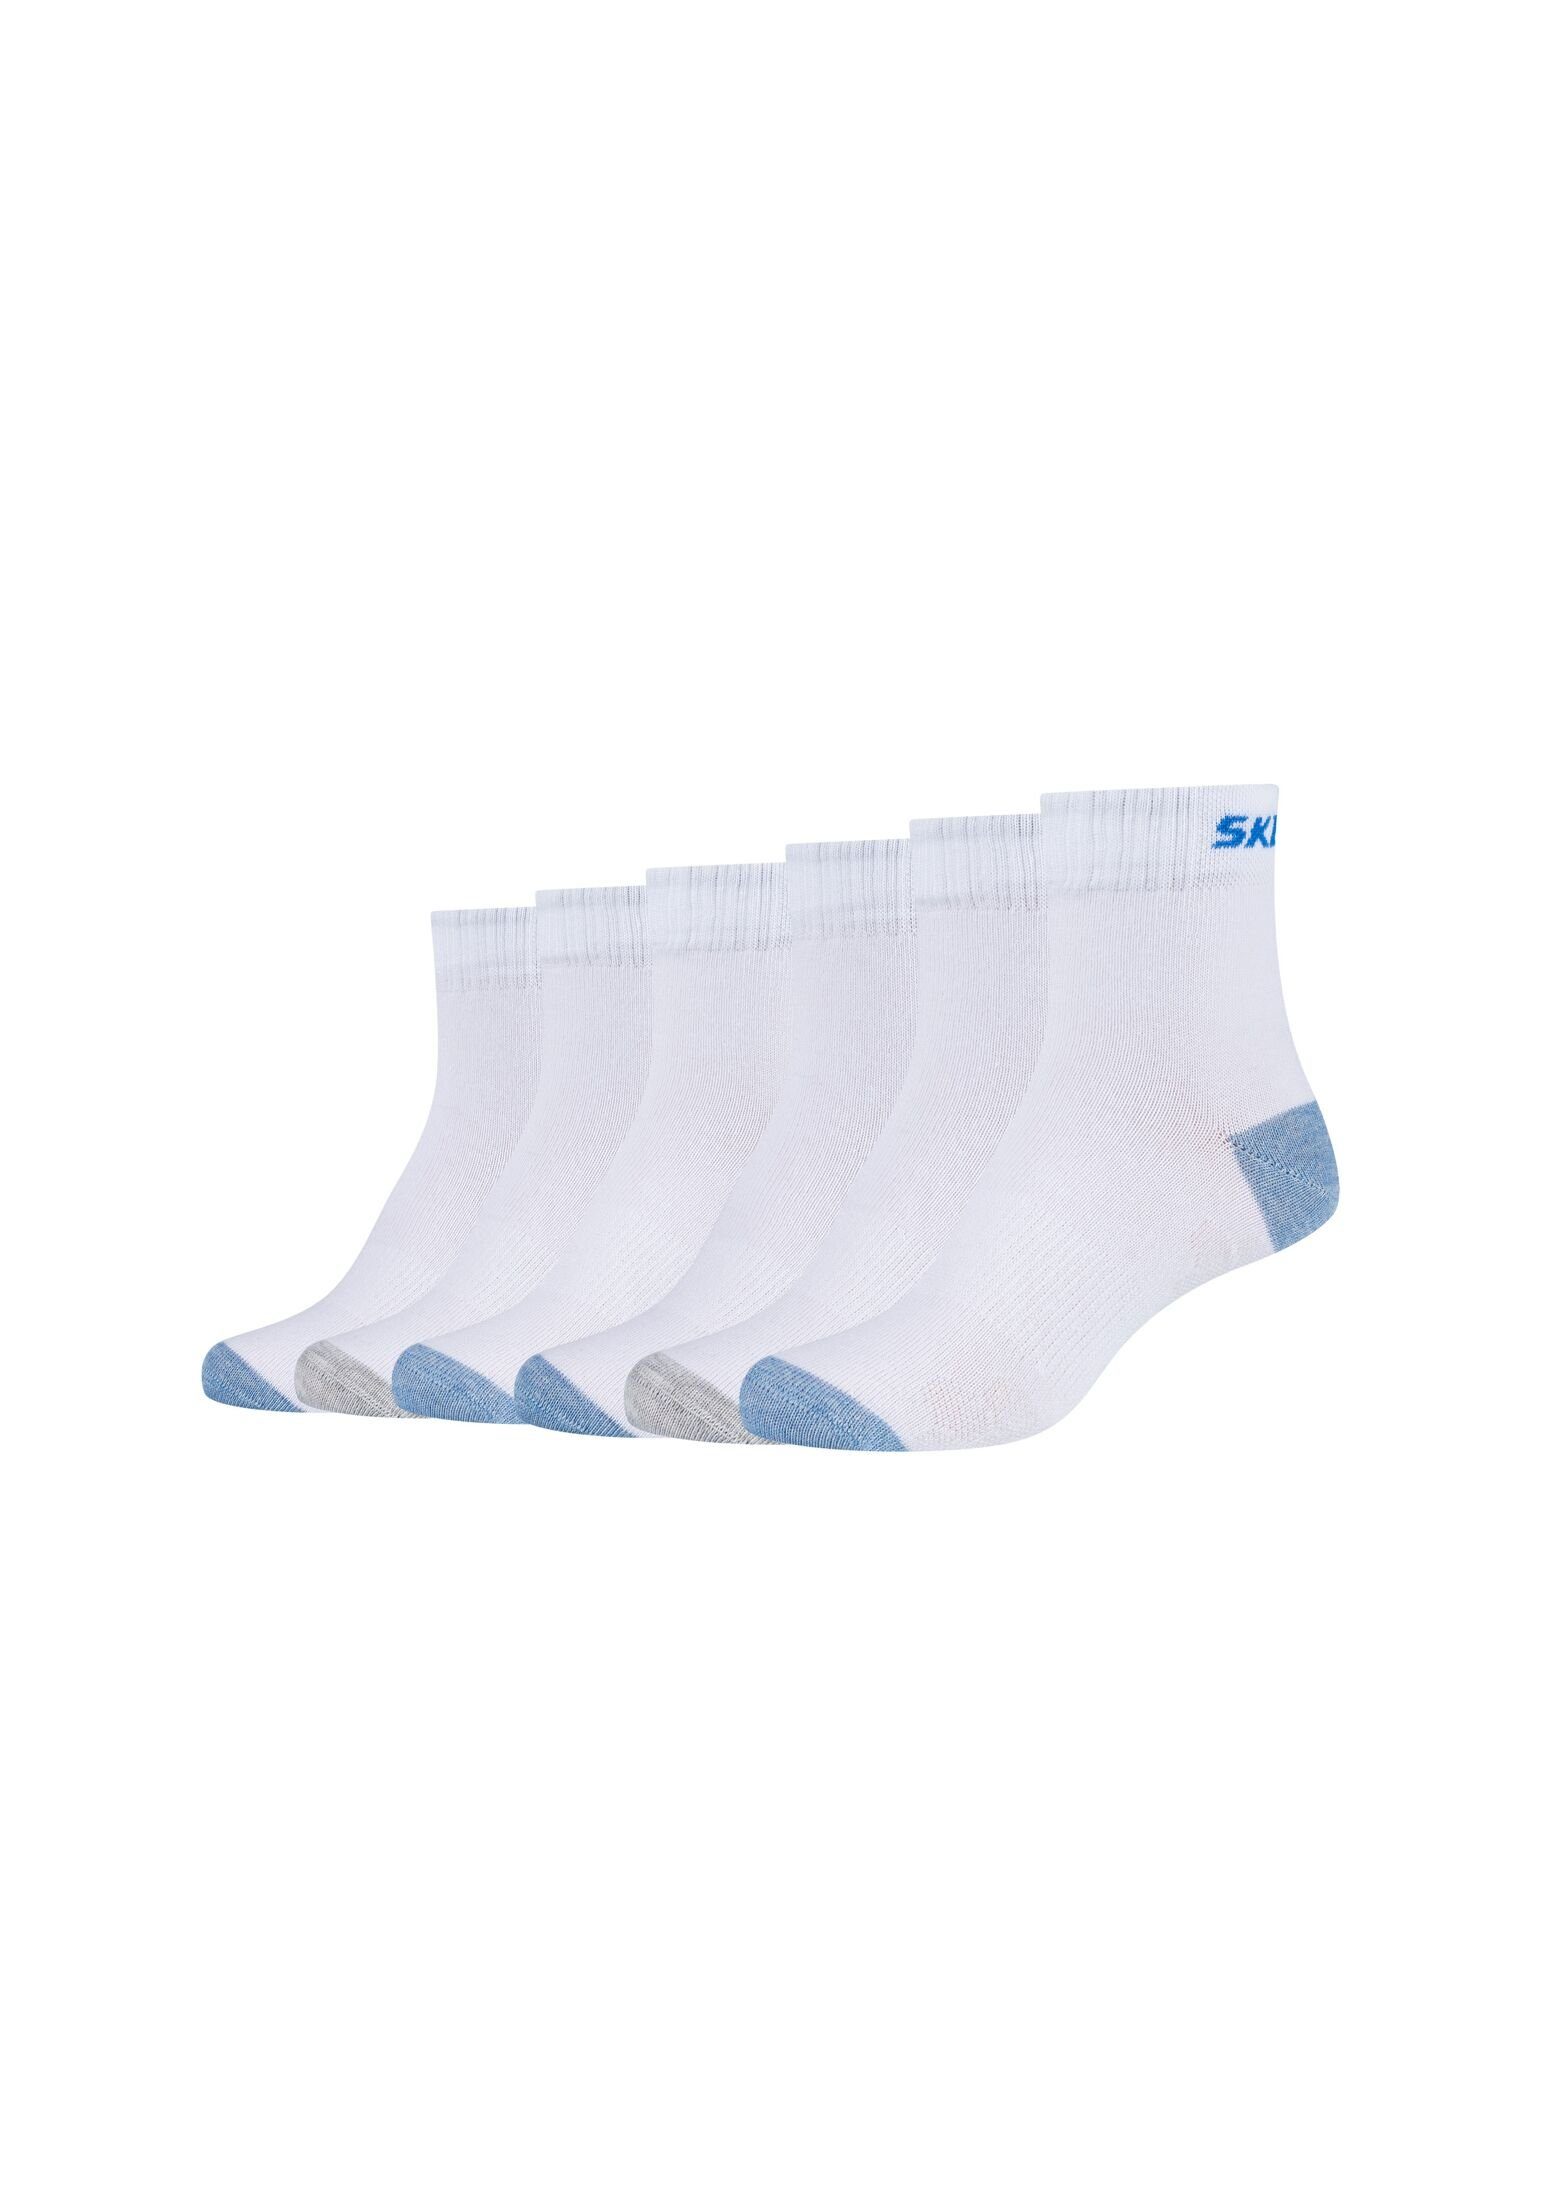 Skechers Socken Socken 6er Pack white | Lange Socken